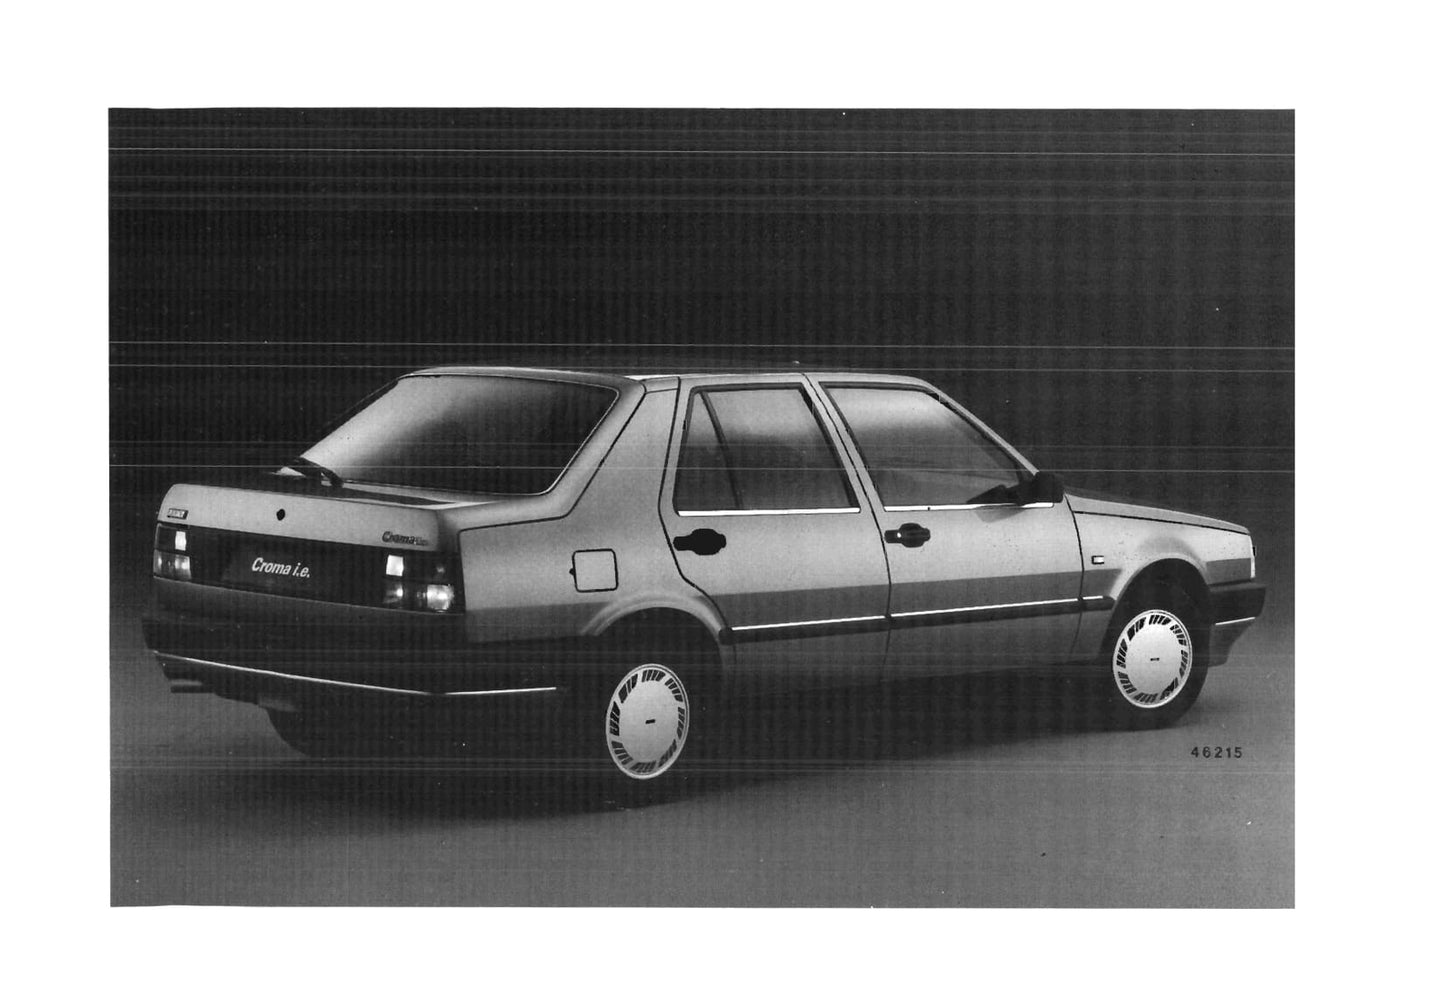 1990-1991 Fiat Croma Gebruikershandleiding | Nederlands